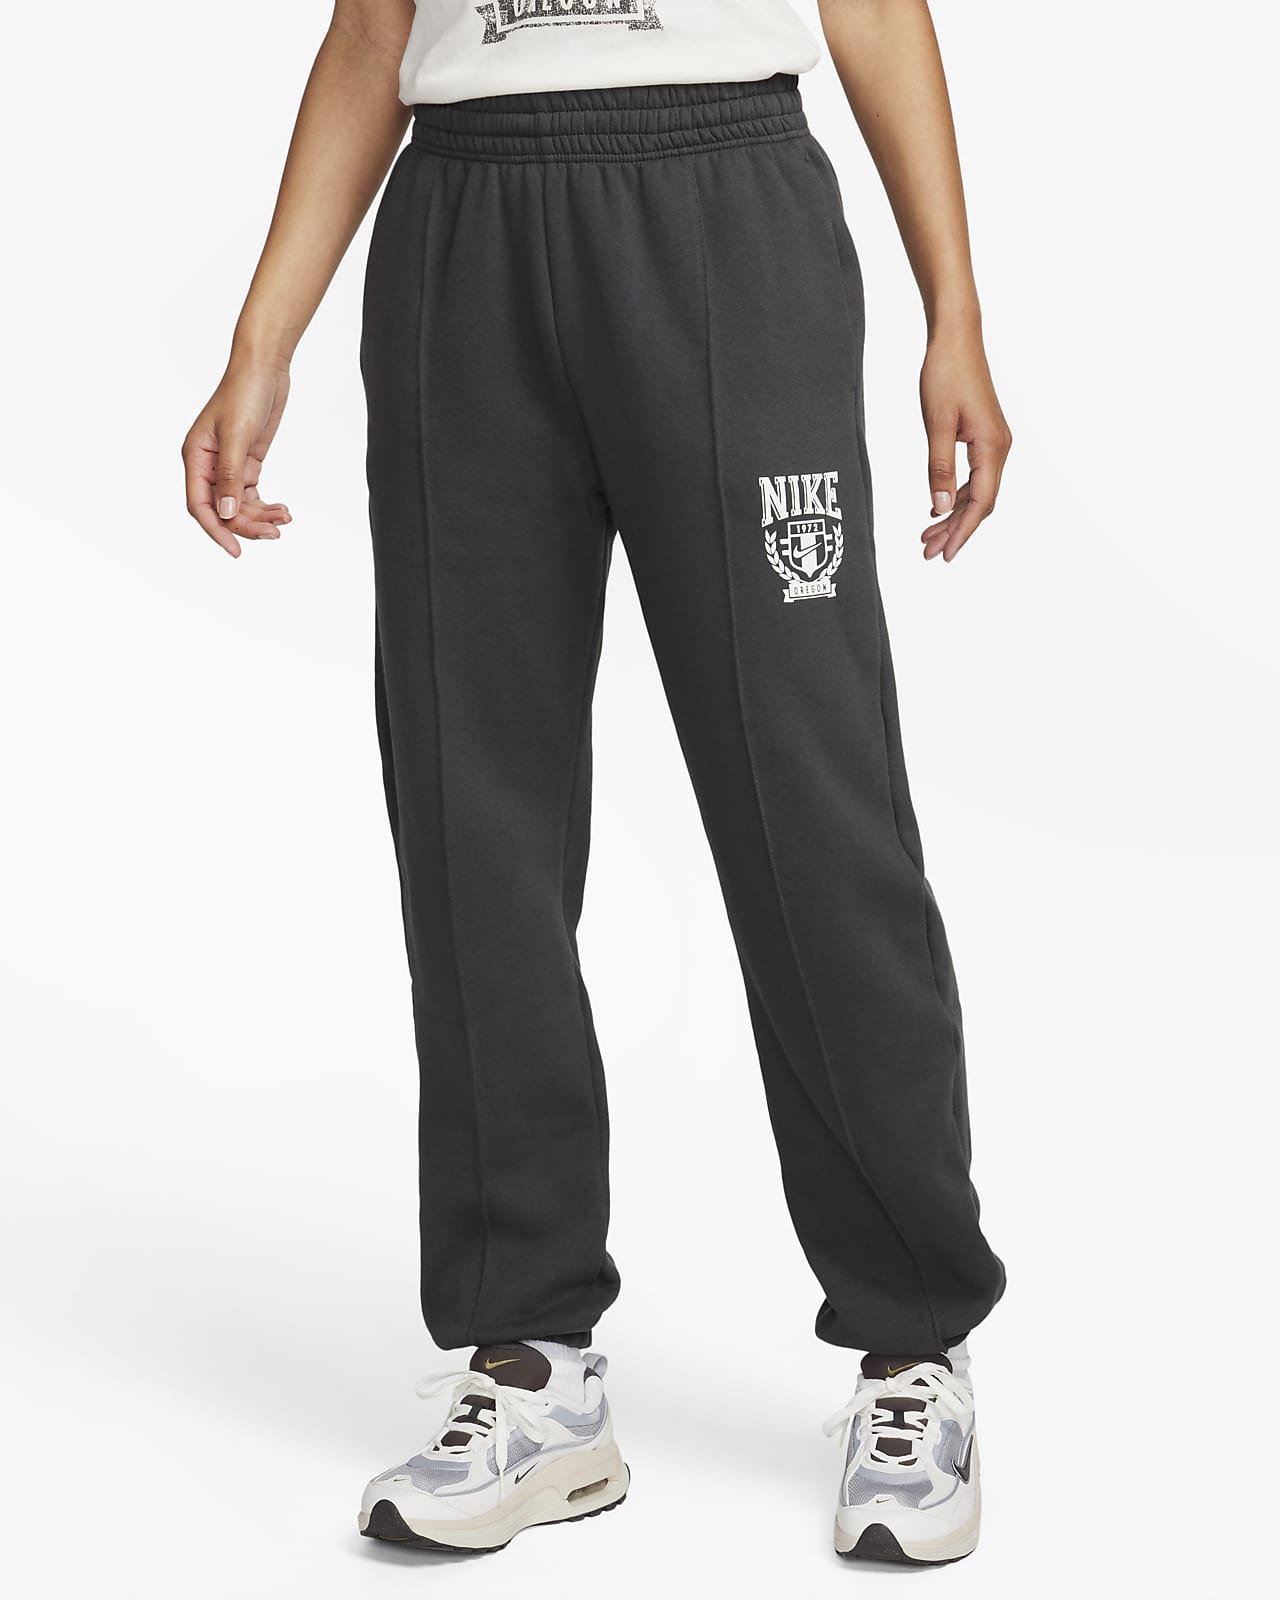 Nike Sportswear damesjoggingbroek van fleece